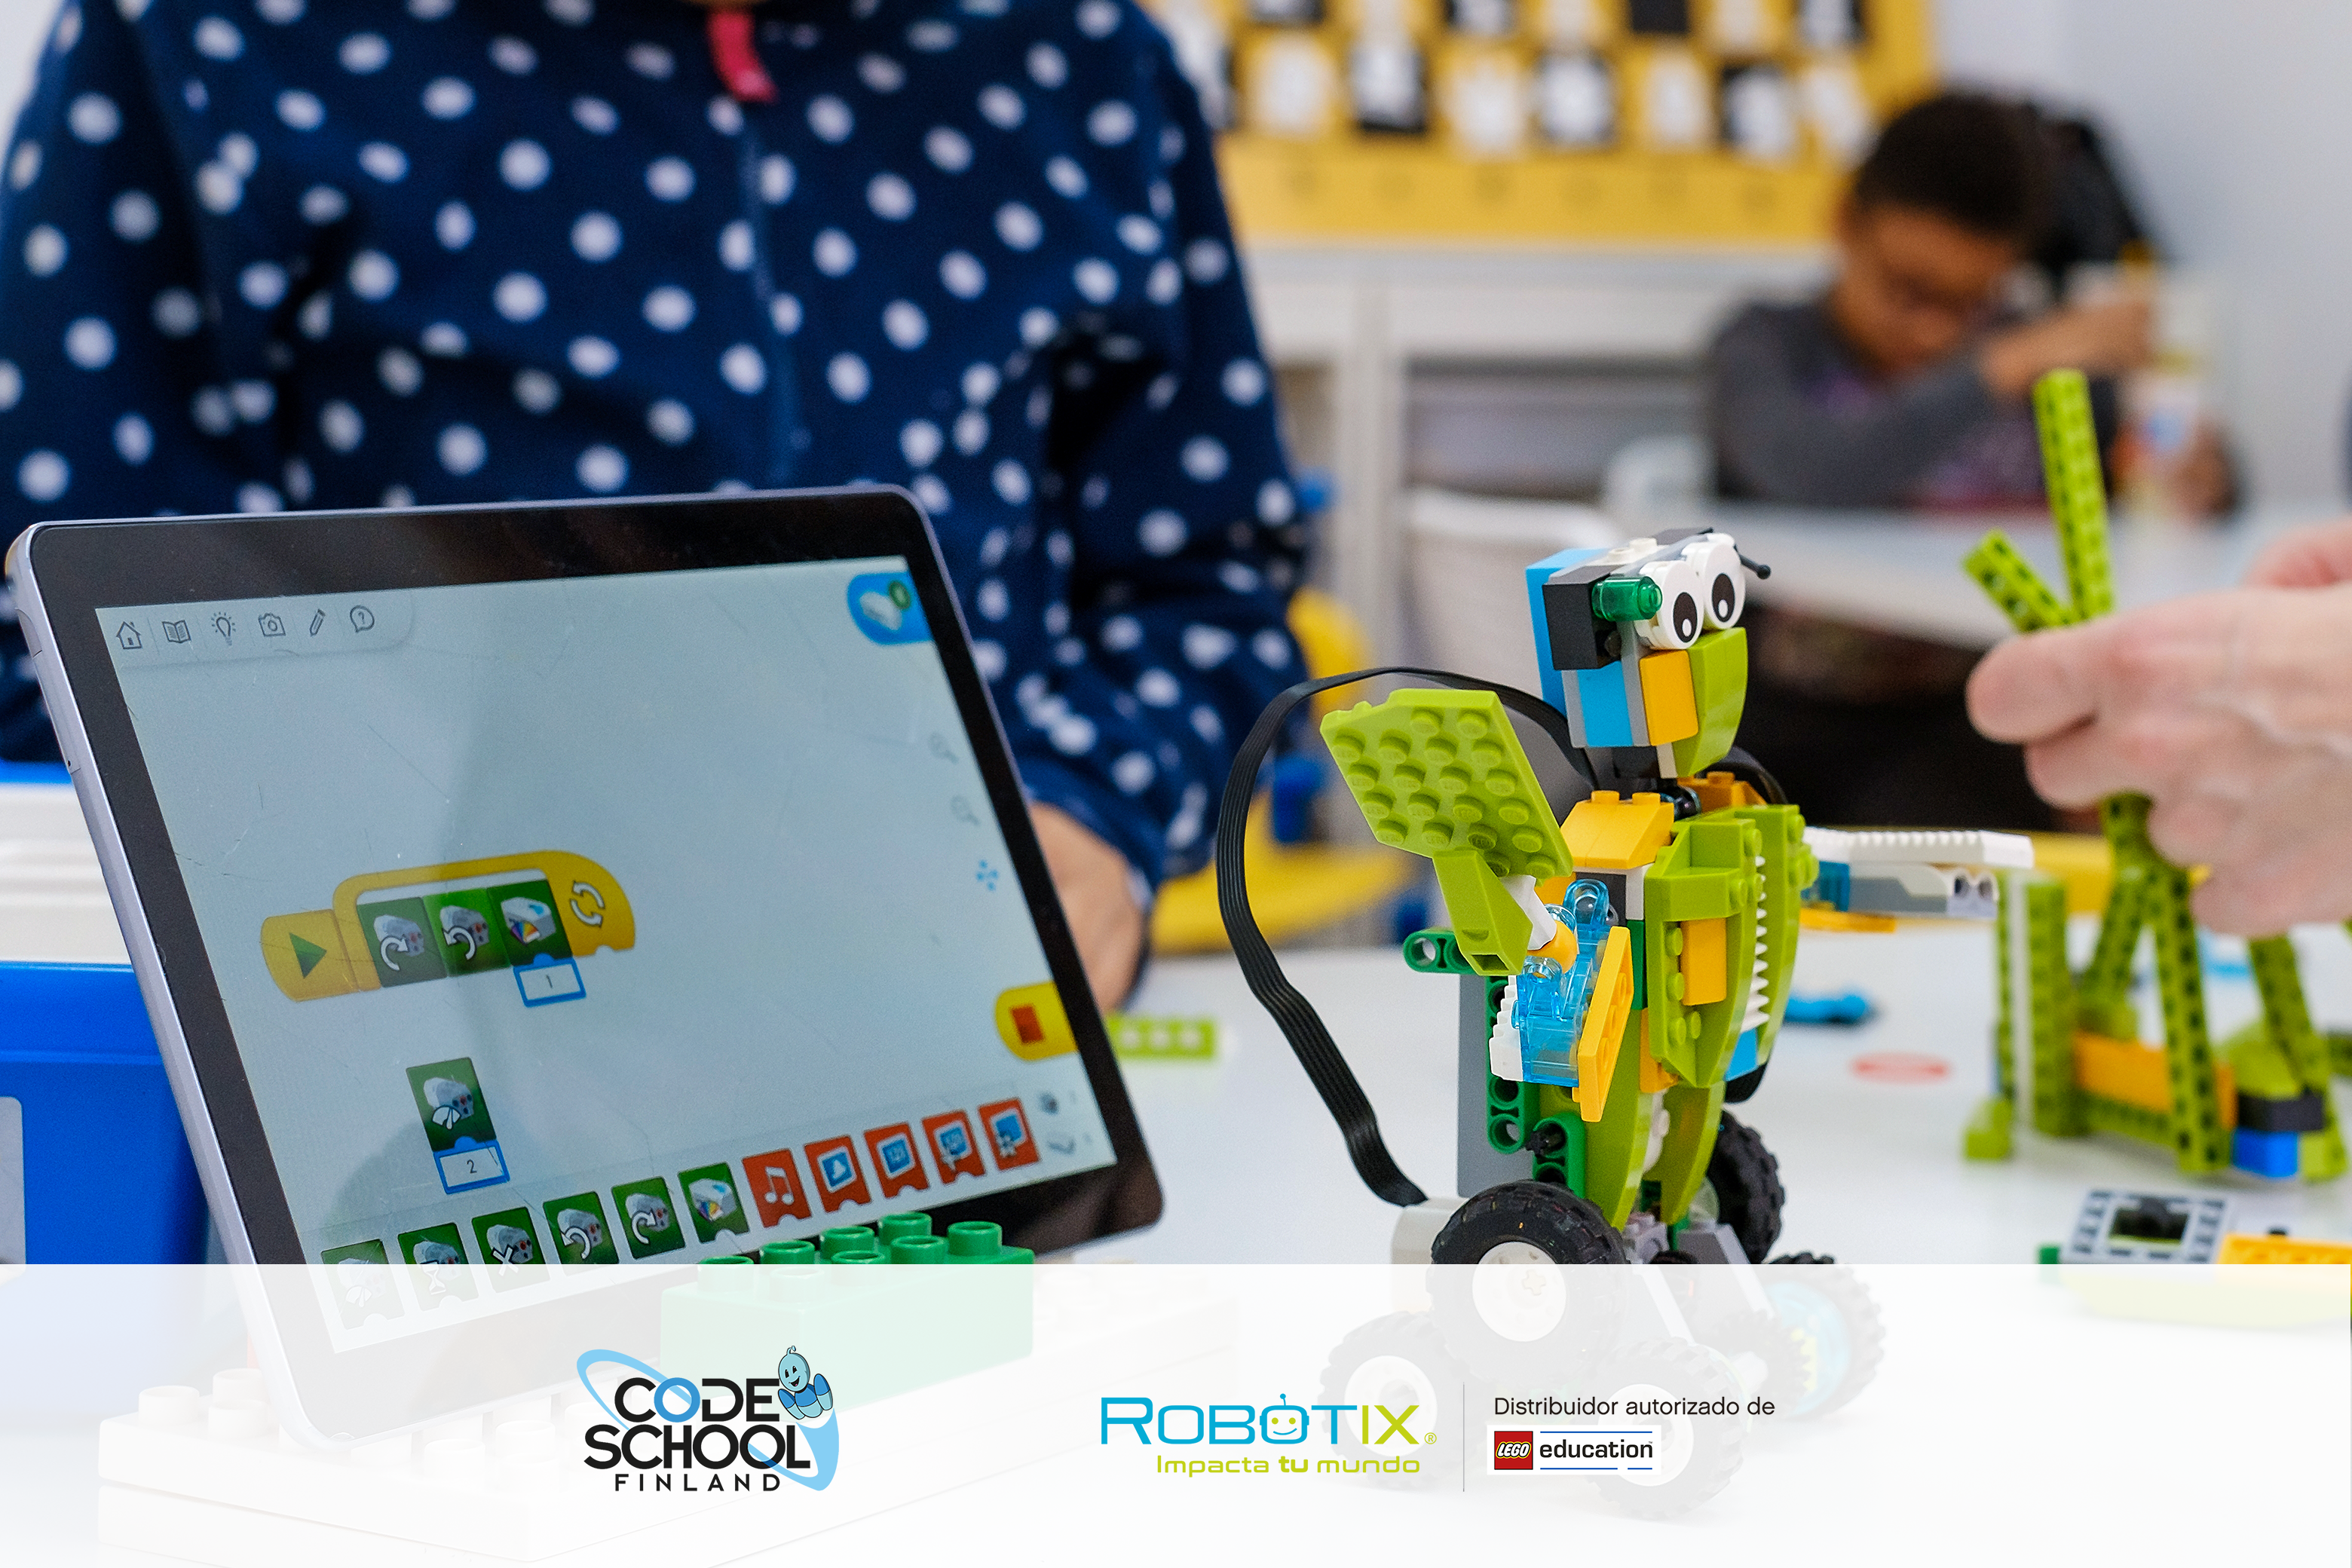 Code School Finland y Robotix